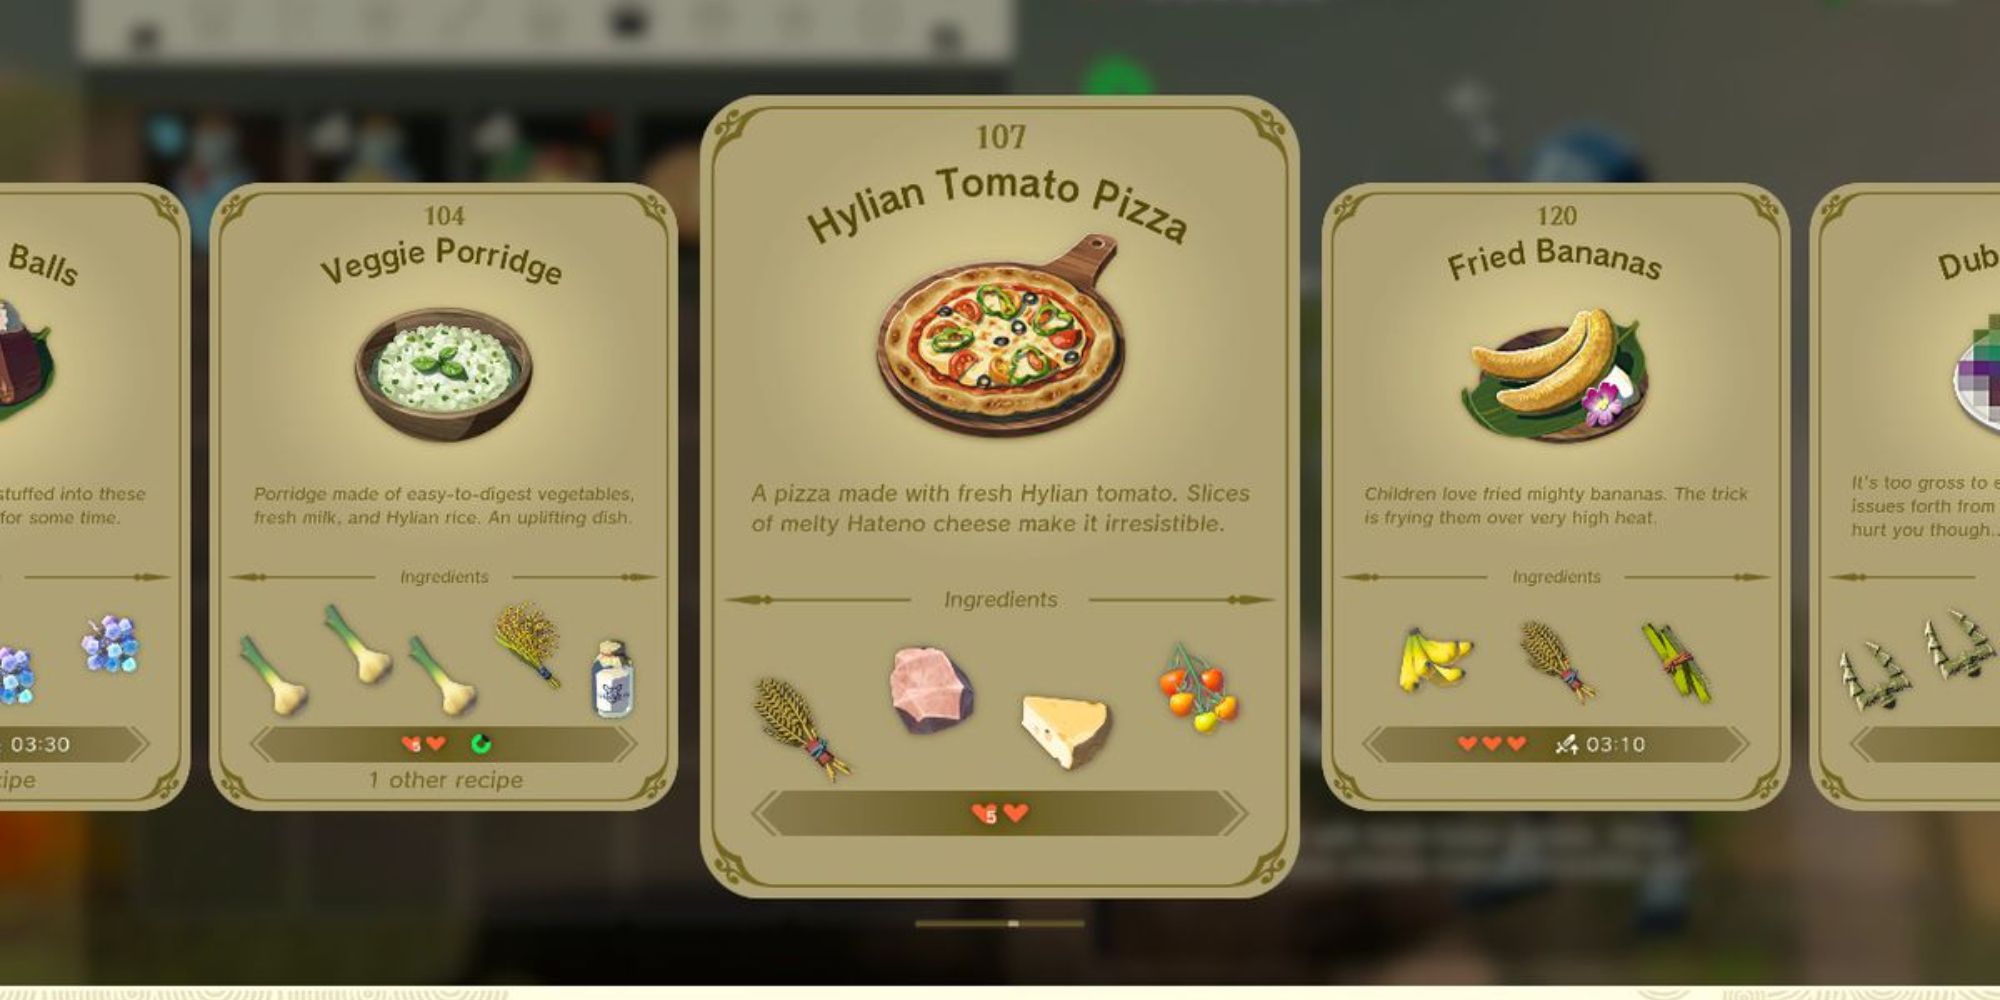 Hylian Tomato Pizza recipe in TOTK